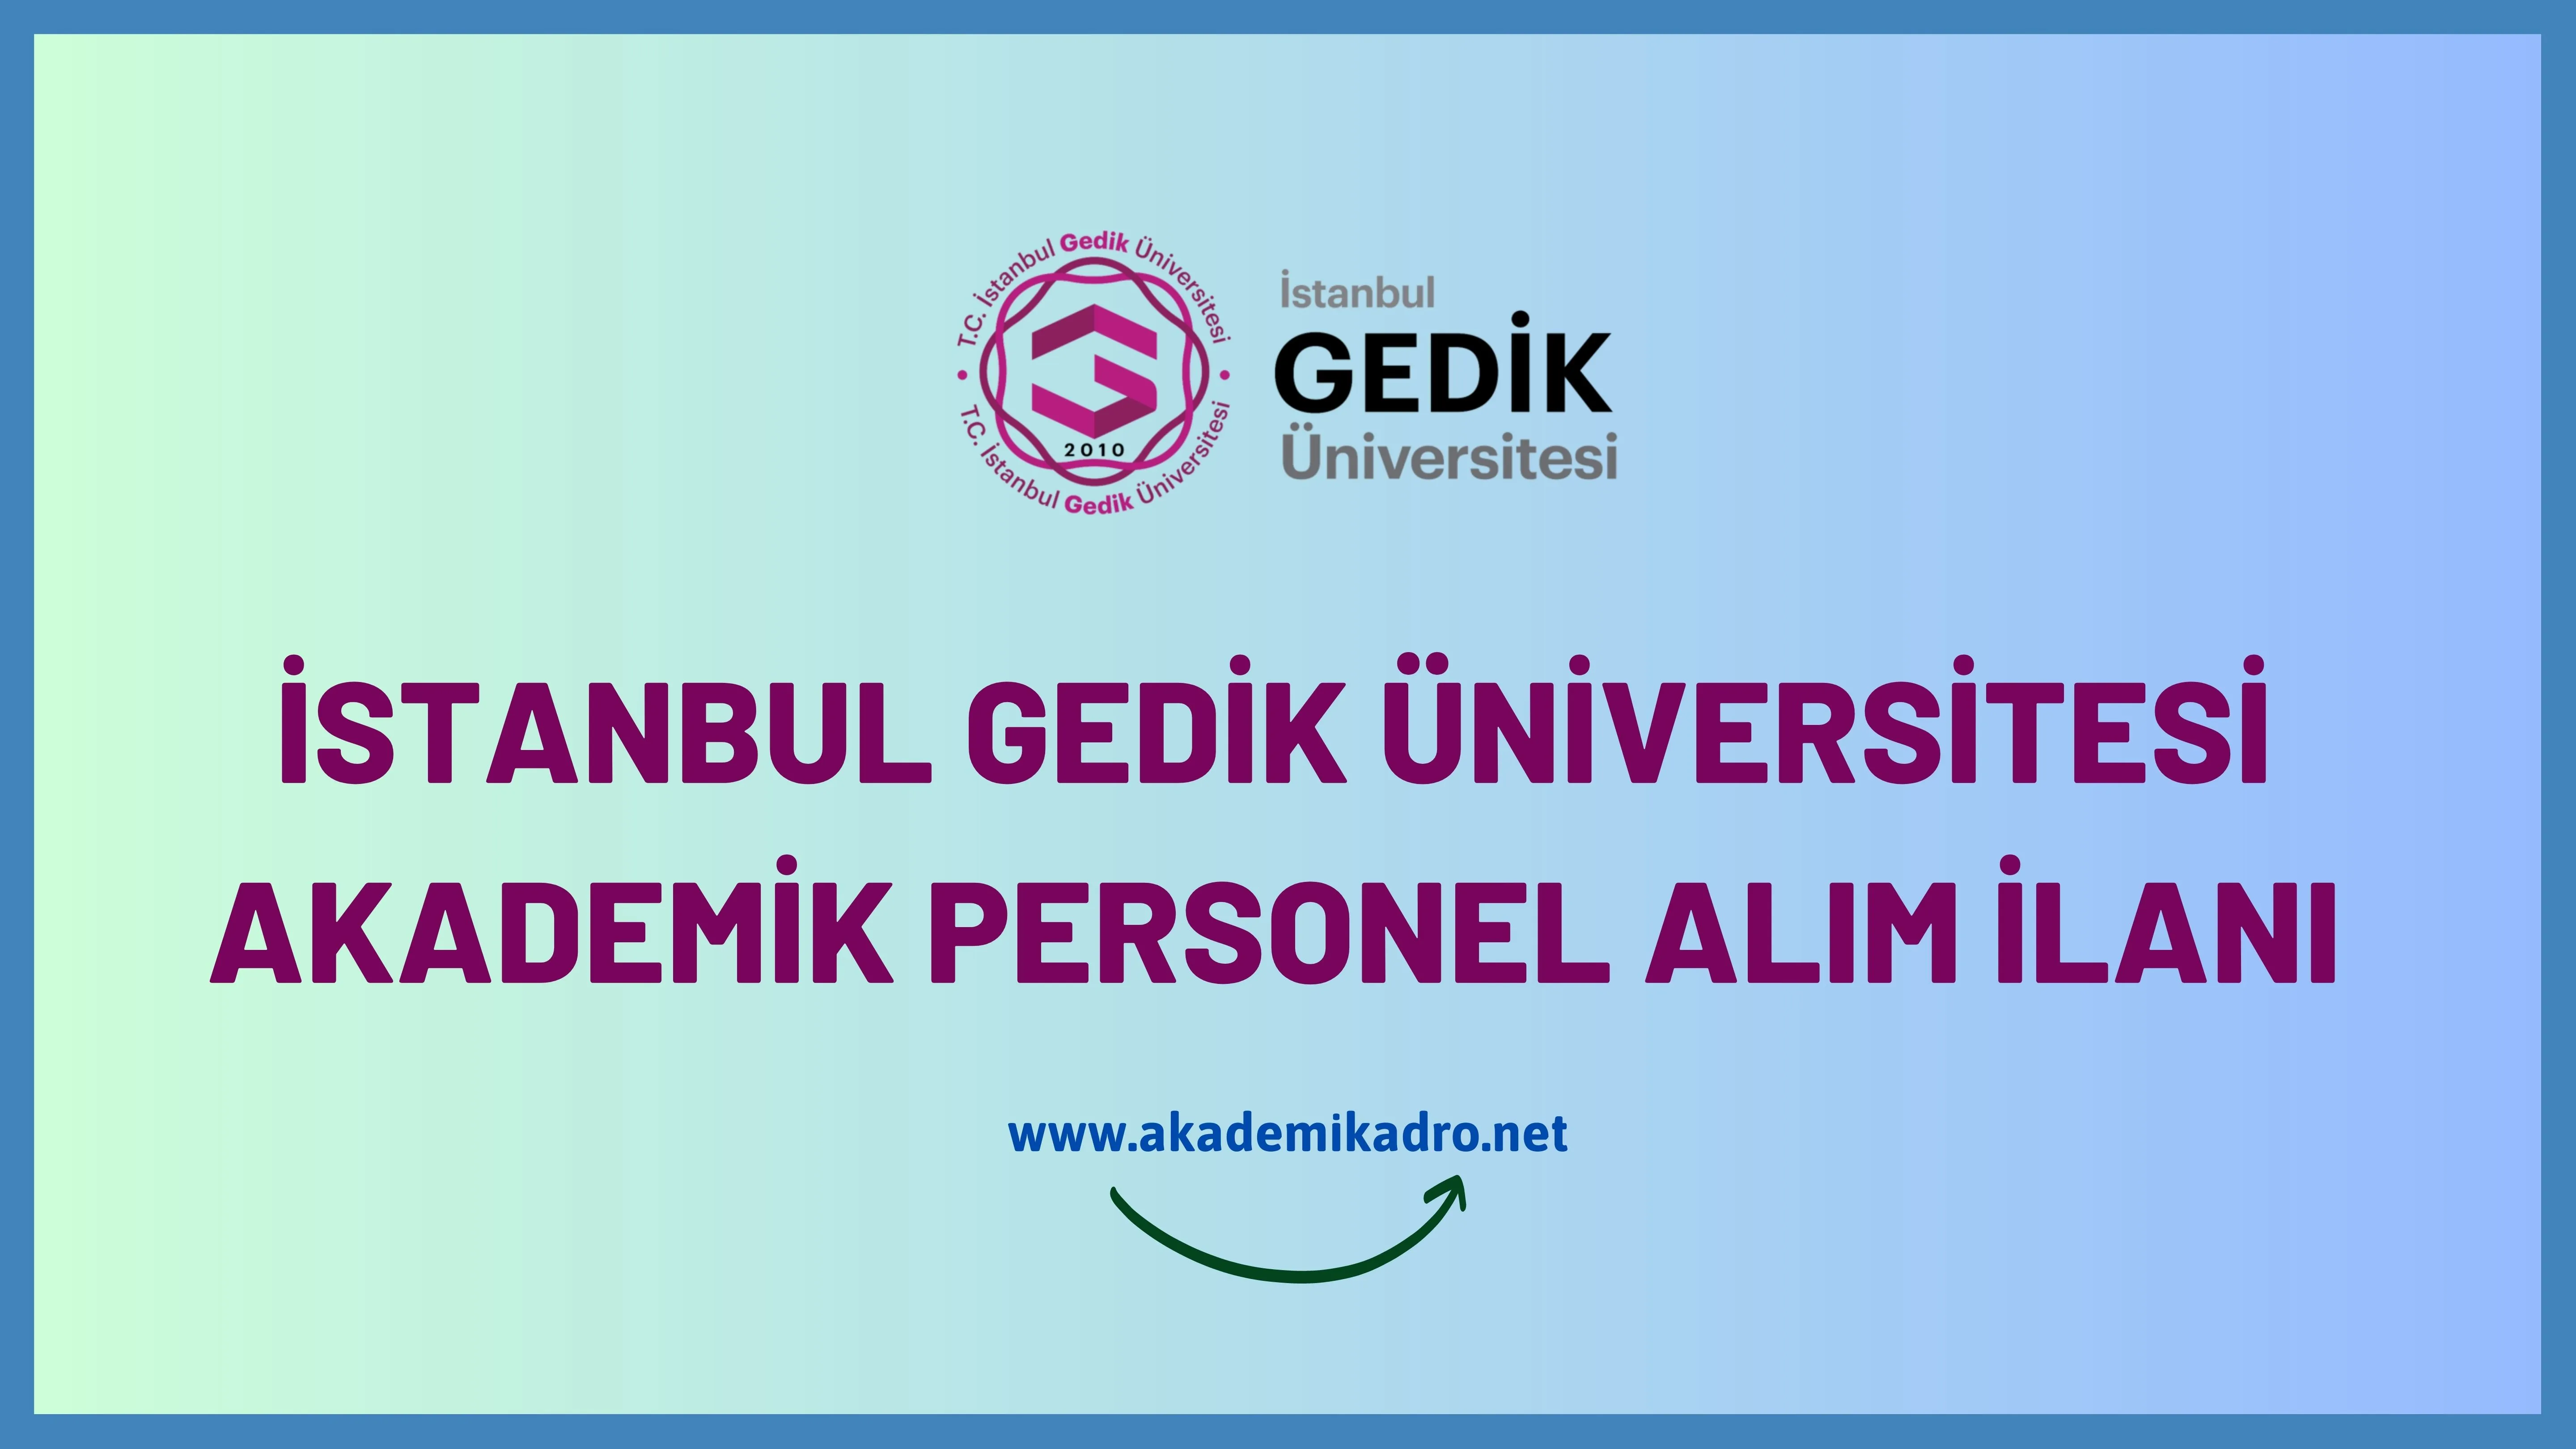 İstanbul Gedik Üniversitesi birçok alandan 9 akademik personel alacak.